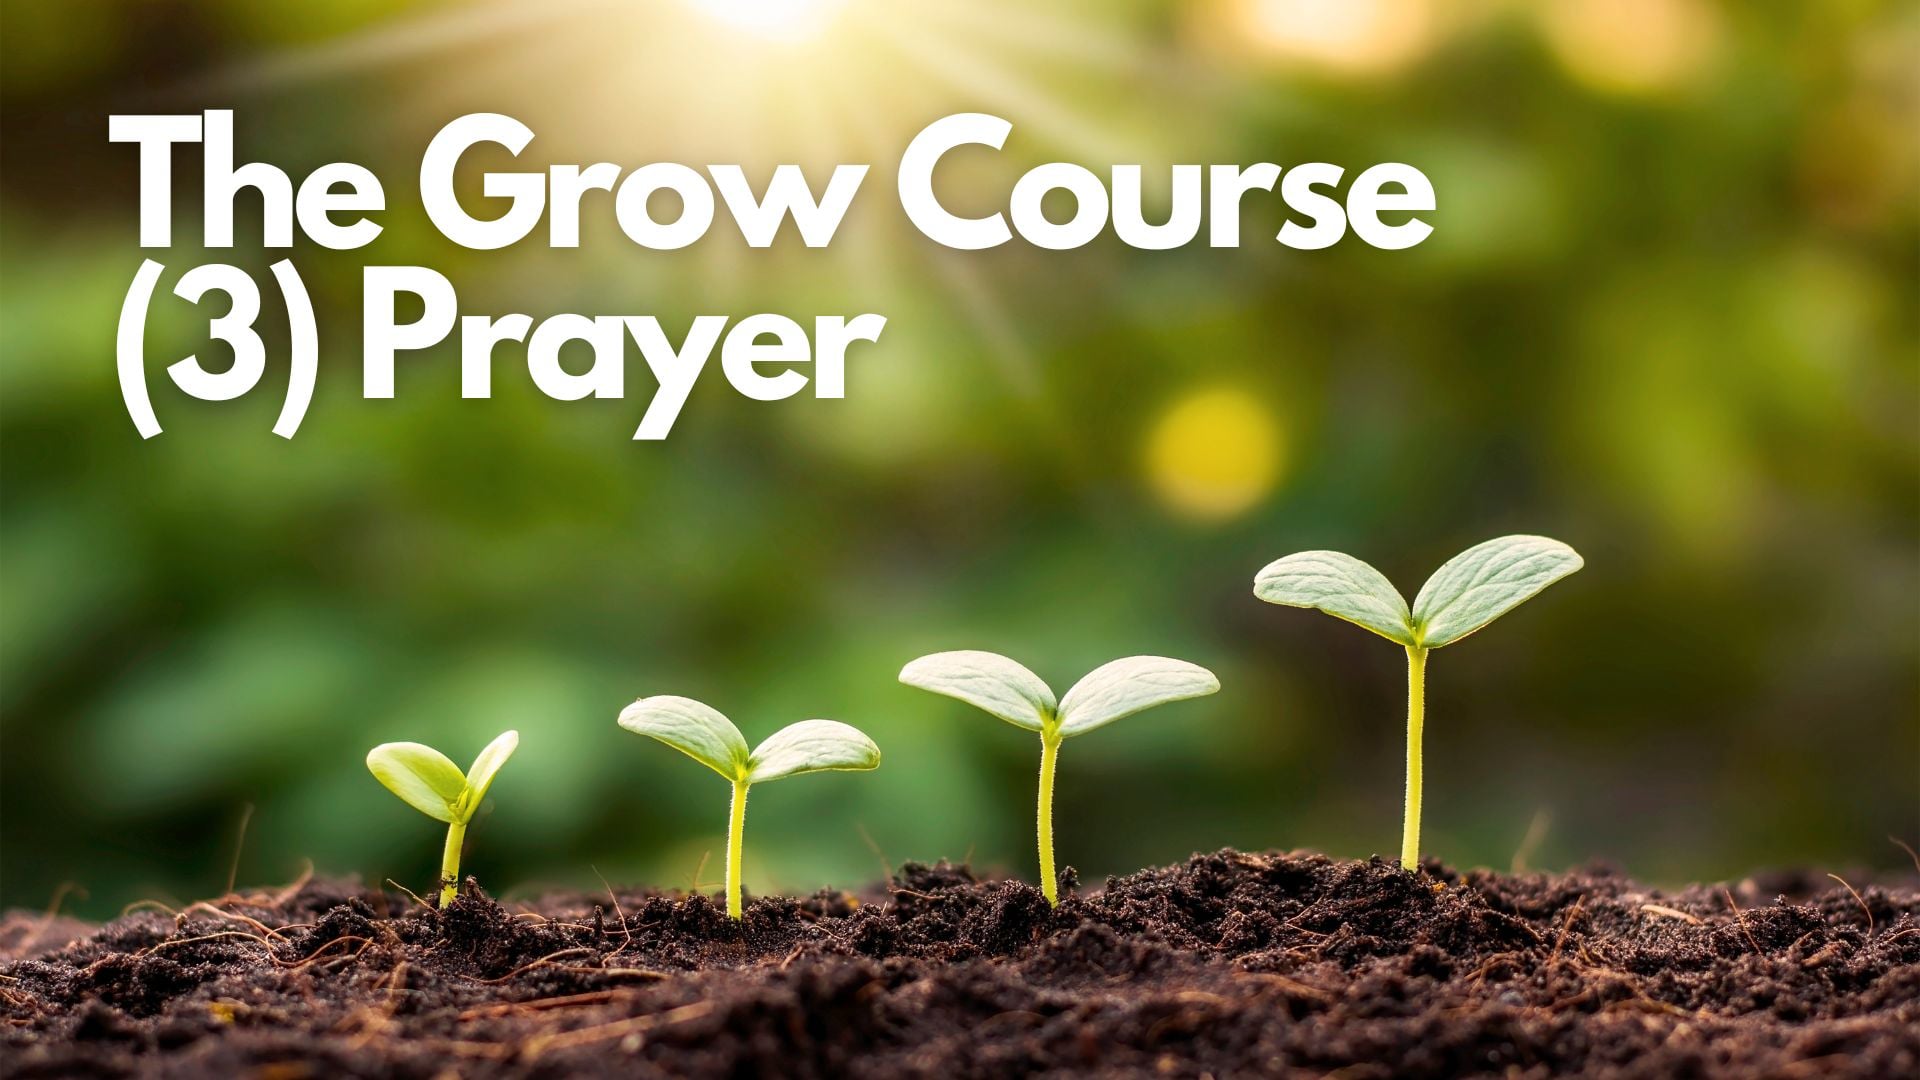 The Grow Course 3 - Prayer